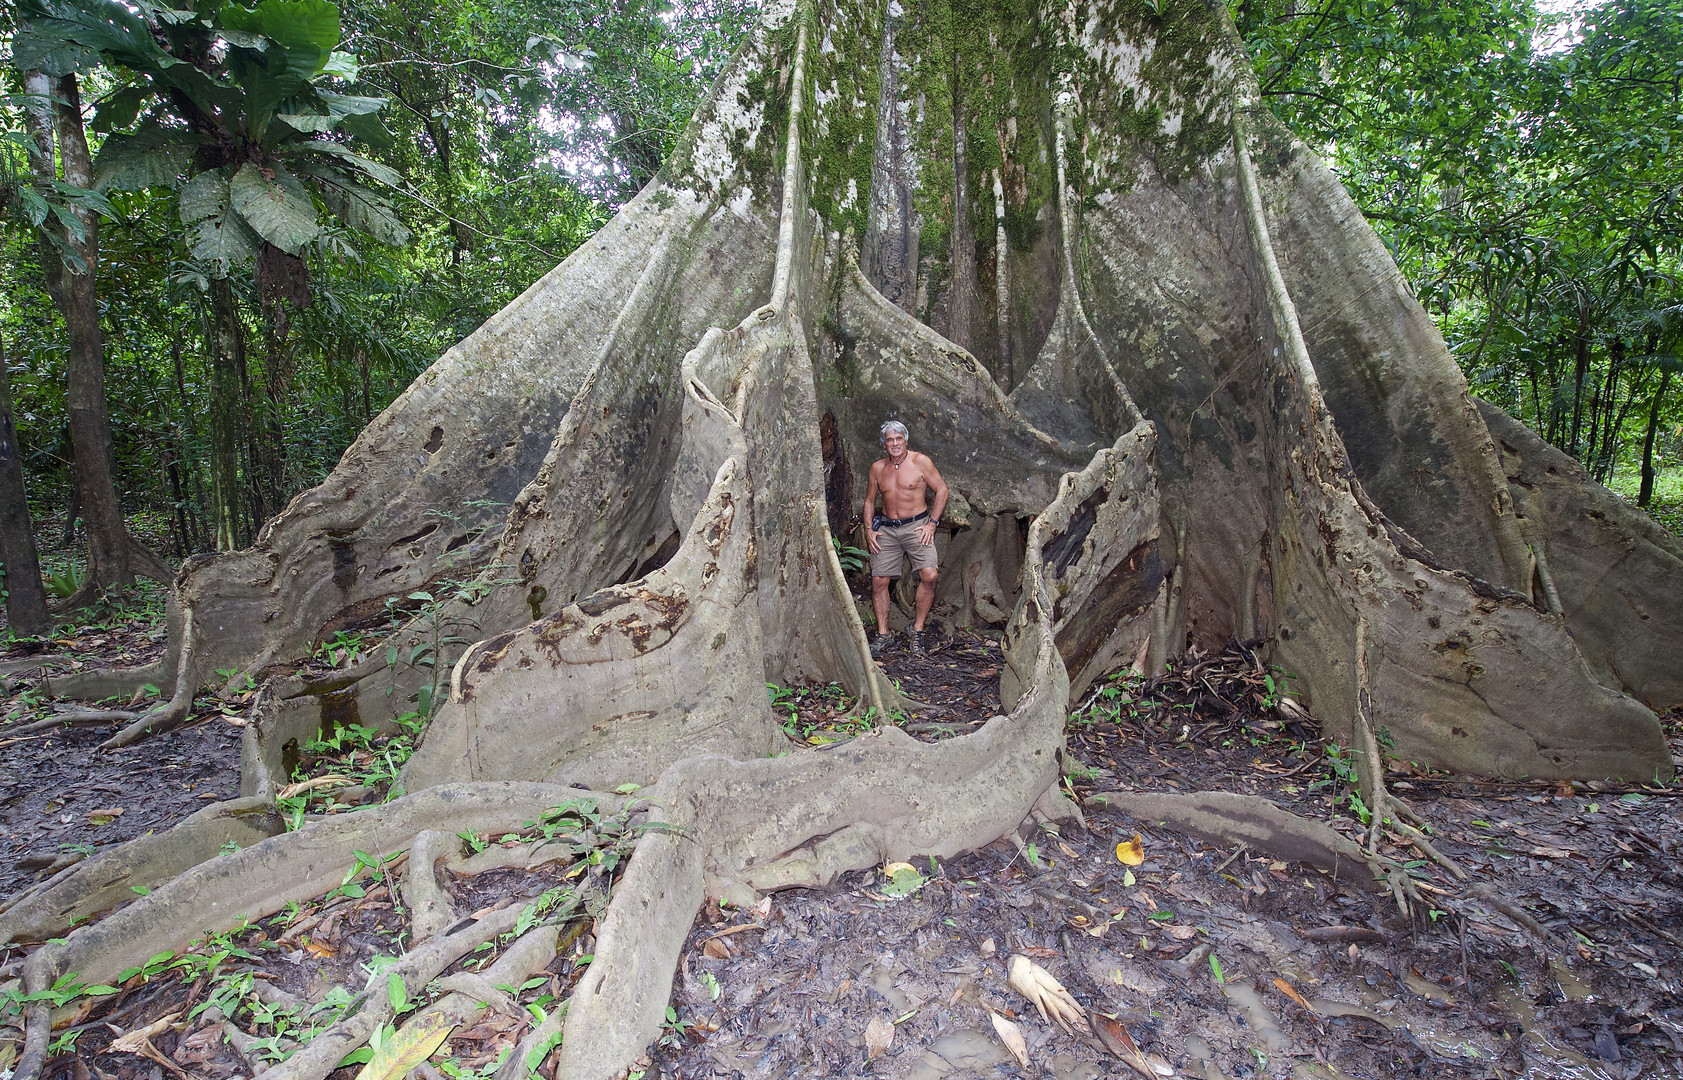 Urwaldriese aus dem Tieflandregenwald von Kolumbien